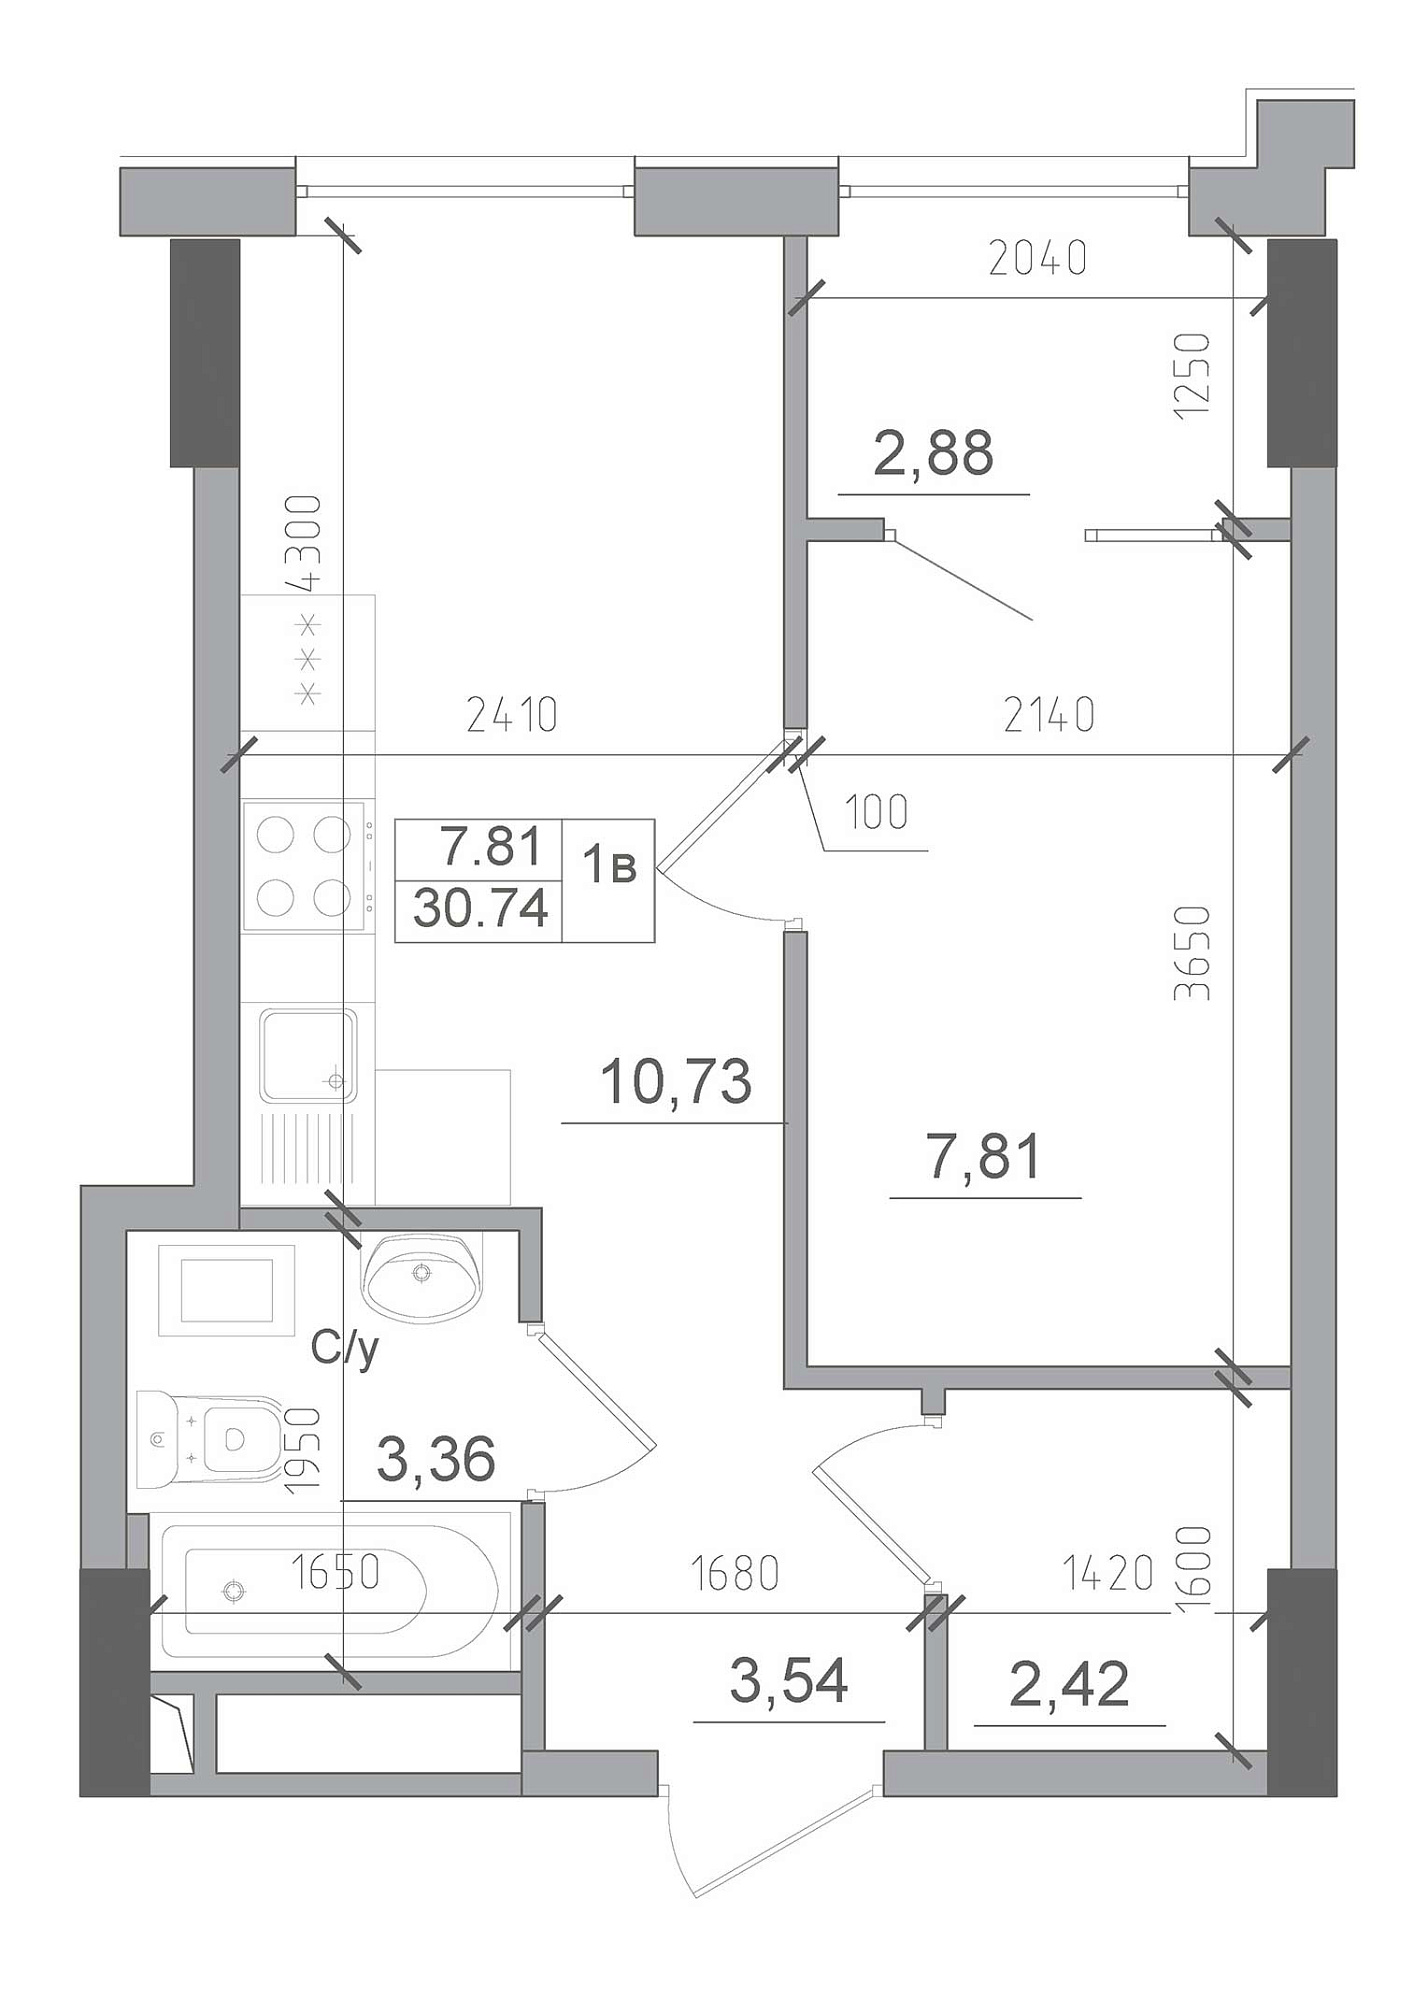 Планування 1-к квартира площею 30.74м2, AB-22-07/00003.